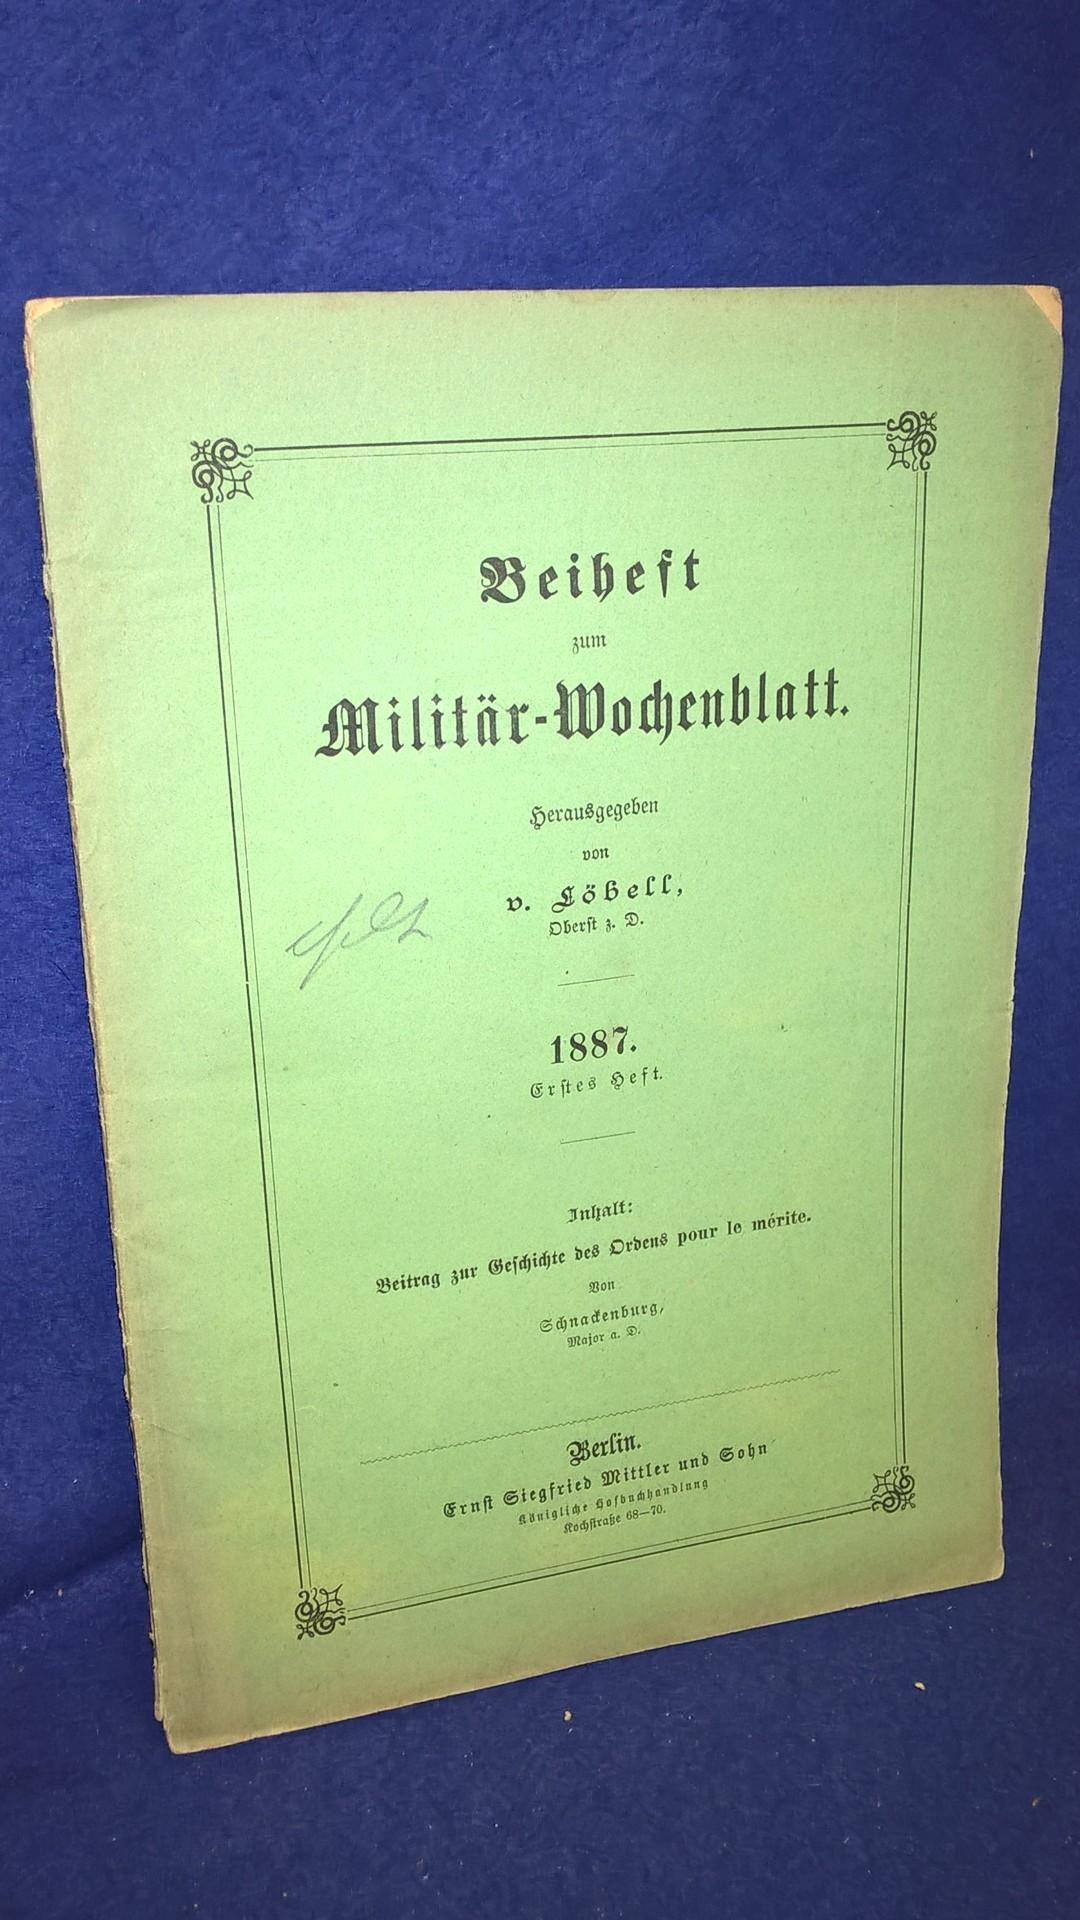 Beiheft zum Militärwochenblatt, 1. Heft,1887. Aus dem Inhalt: Beitrag zur Geschichte des Ordens Pour le Merite.